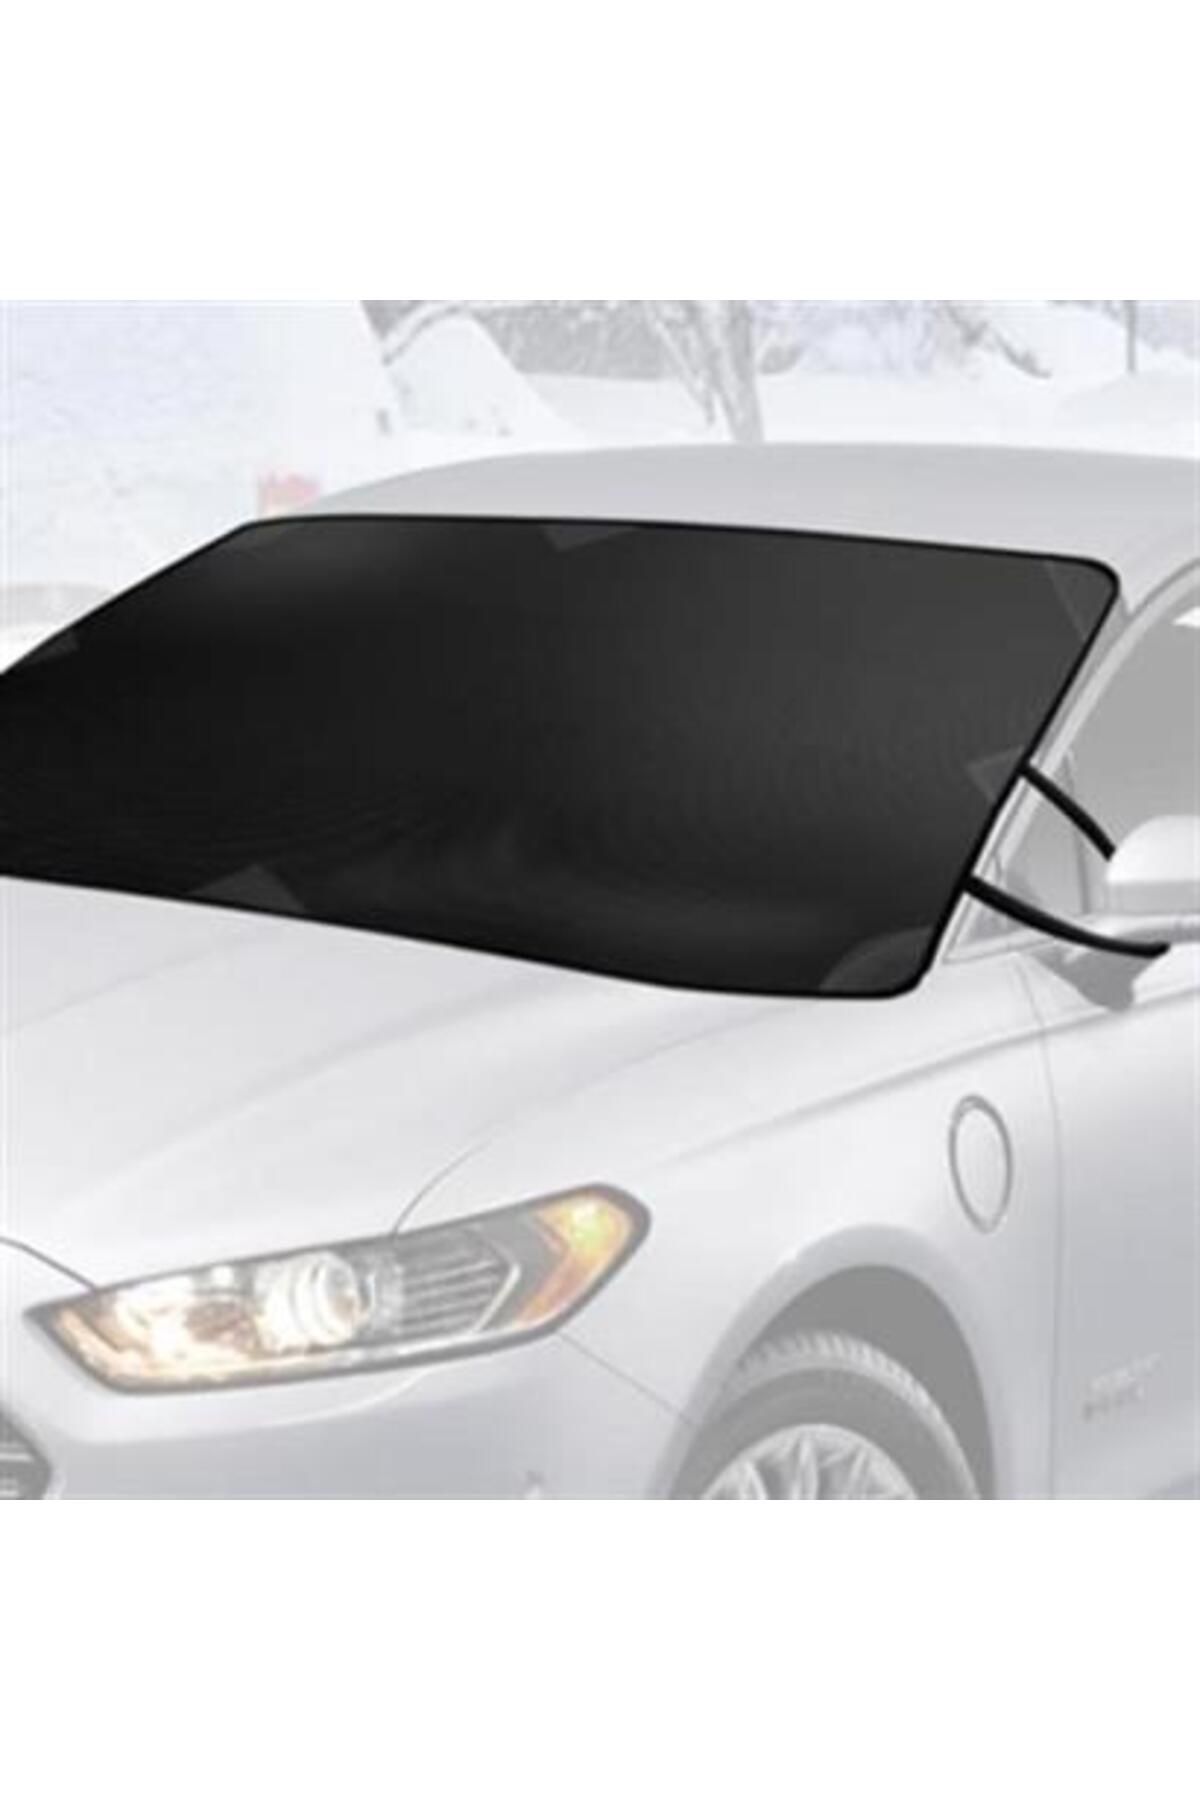 TREND BUFFER® Büyük Boy Araçlar İçin Ön Cam Brandası SUV ve Doblo Araçlar İçin Kar Buz Güneş Brandası